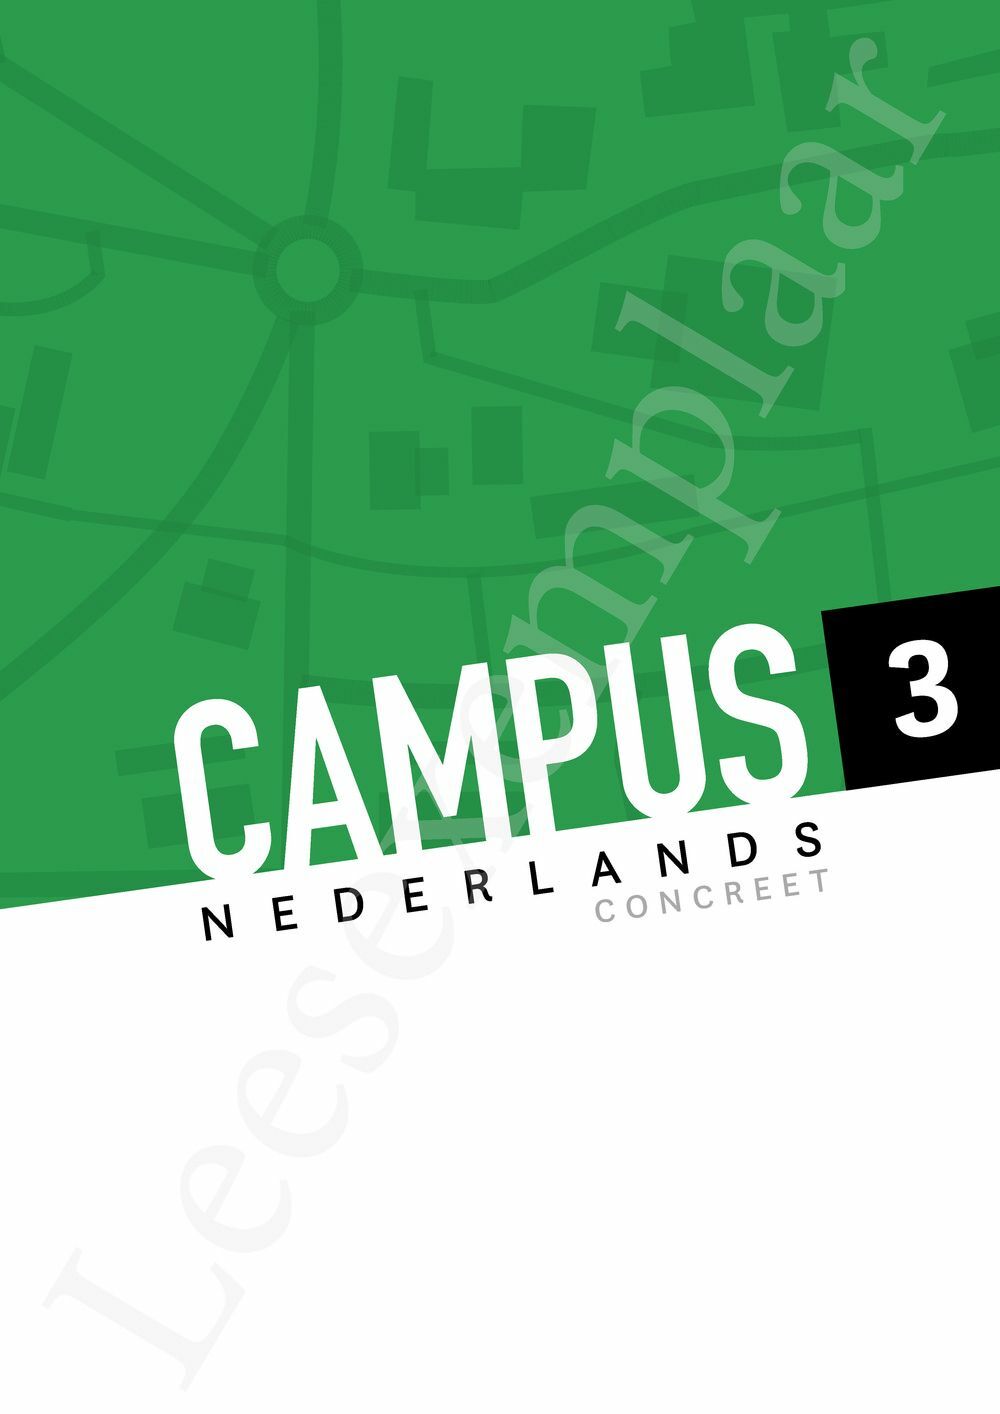 Preview: Campus Nederlands Concreet 3 Leerwerkboek (editie 2024) (incl. Pelckmans Portaal)